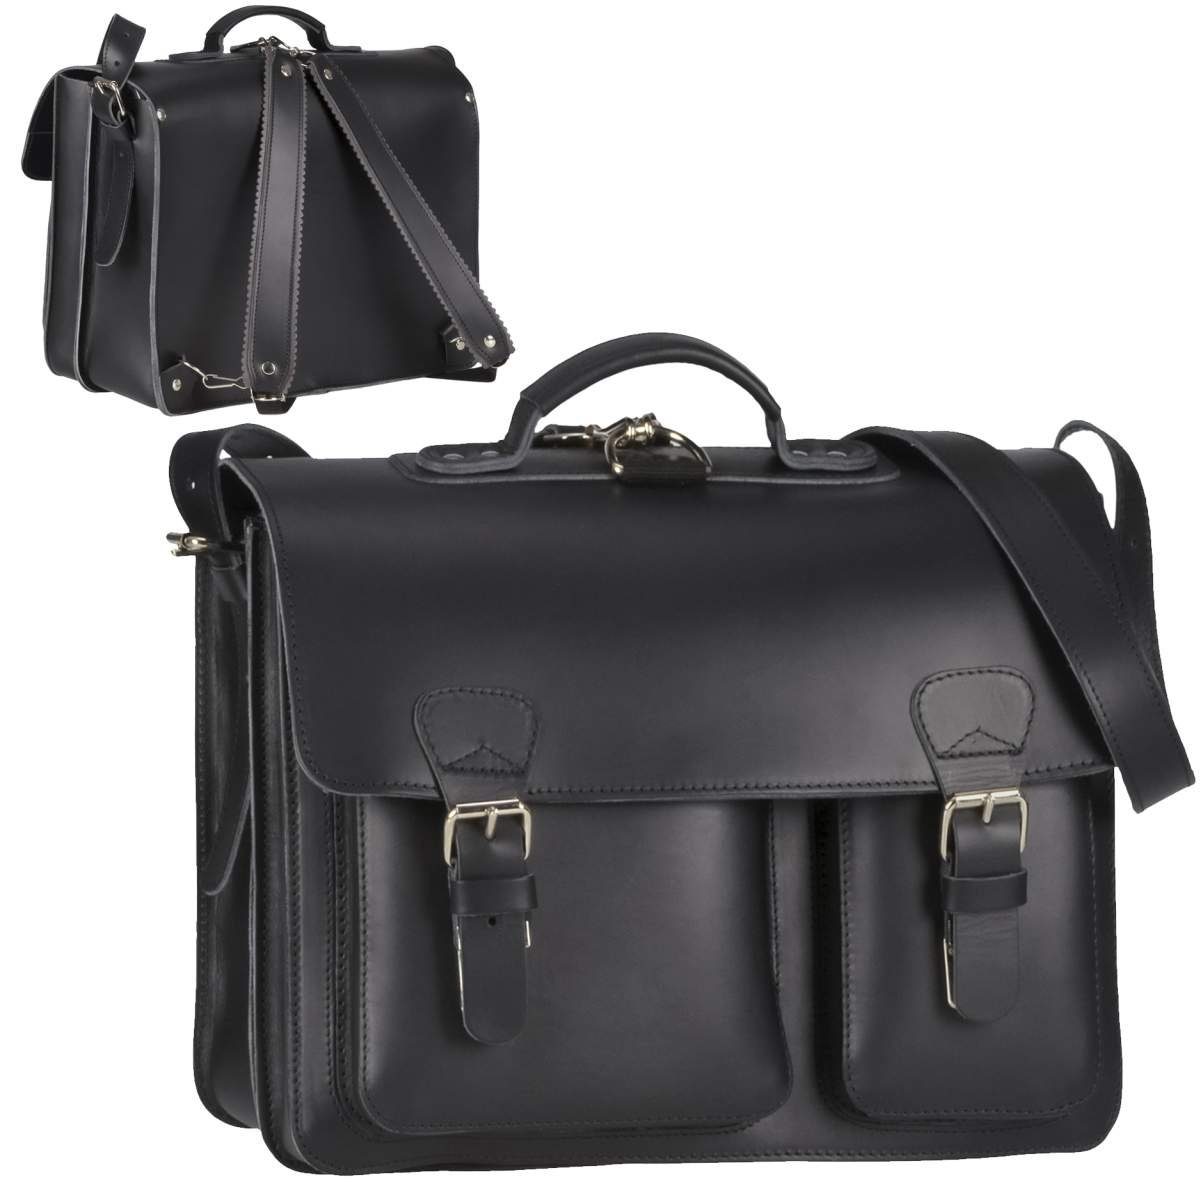 Ruitertassen Aktentasche Classic Satchel, 40 cm Lehrertasche mit 2 Fächern, auch als Rucksack zu tragen, Leder schwarz